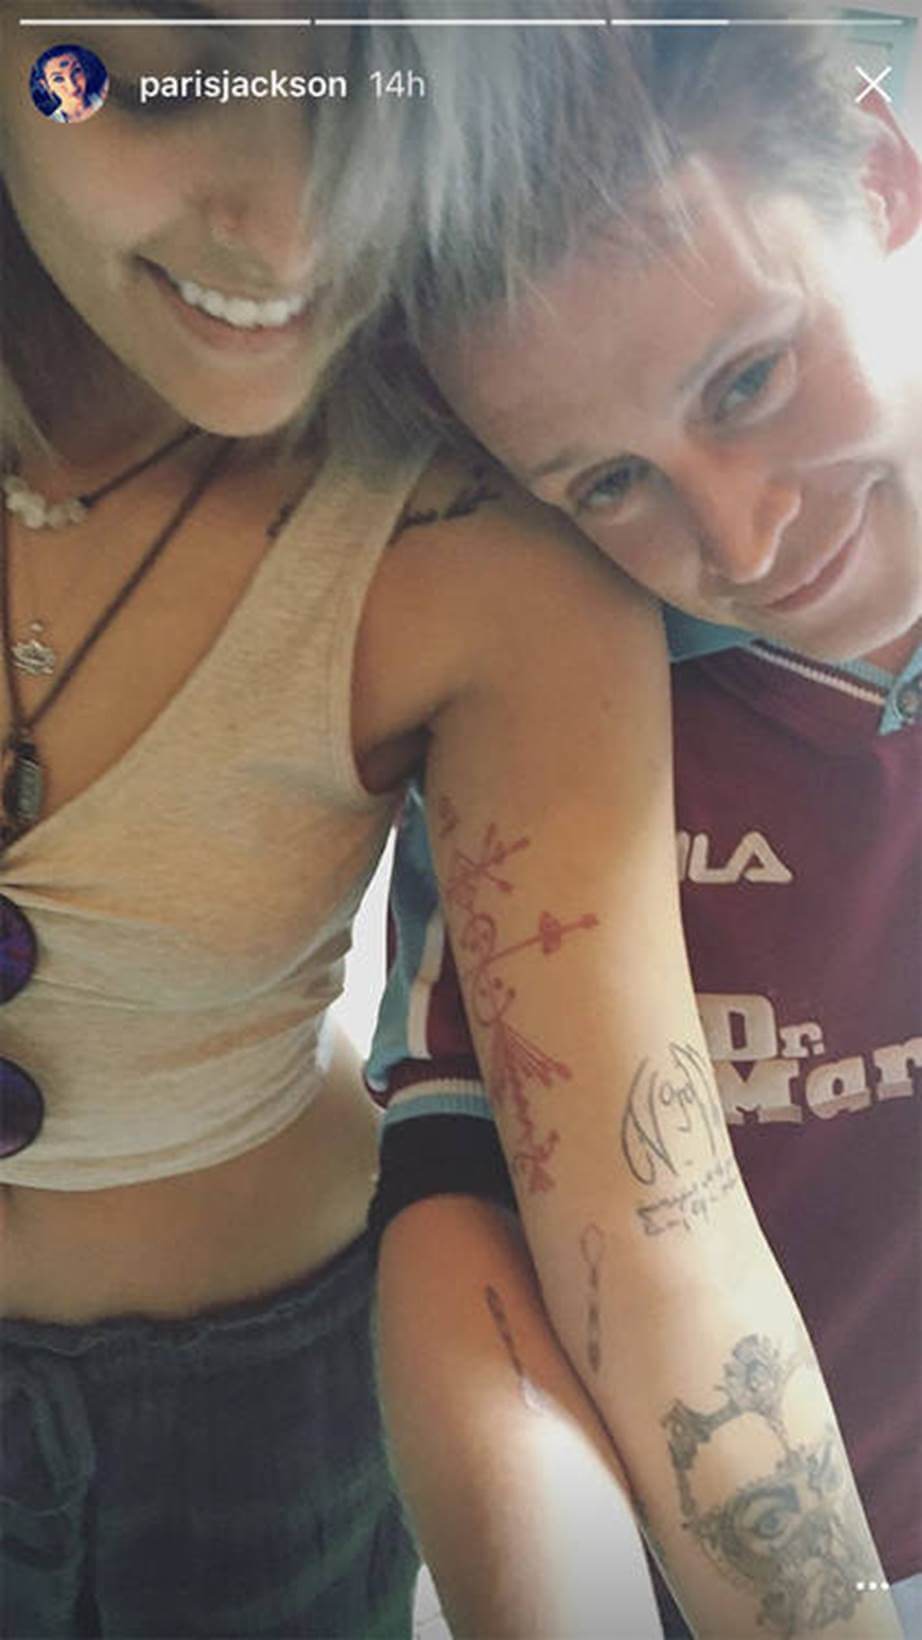 inspiringlife.pt - 16 tatuagens iguais de celebridades que decidiram eternizar a sua amizade na pele